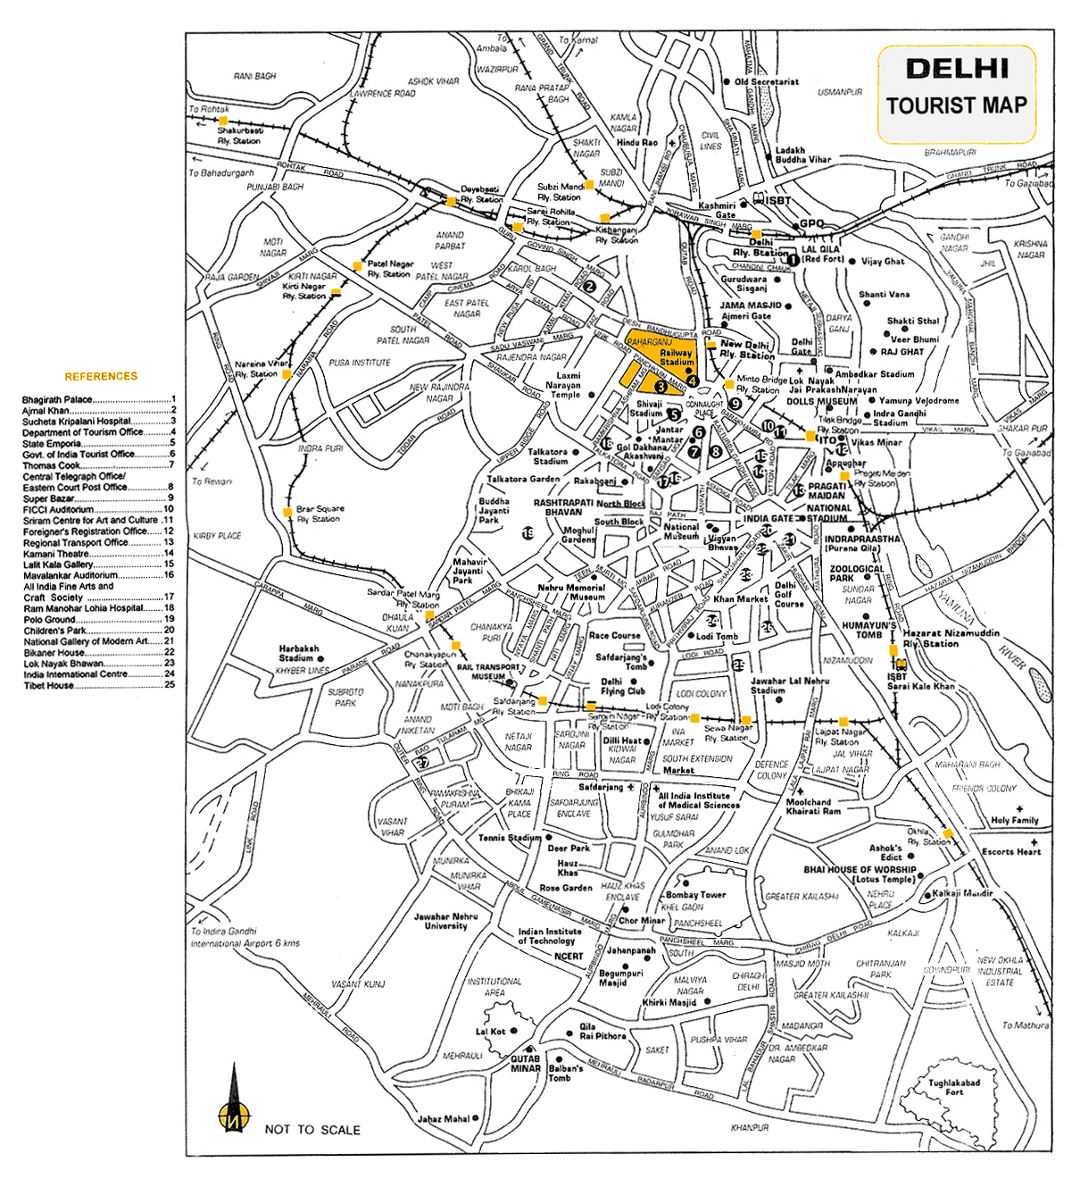 Detallado mapa turístico de la ciudad de Delhi